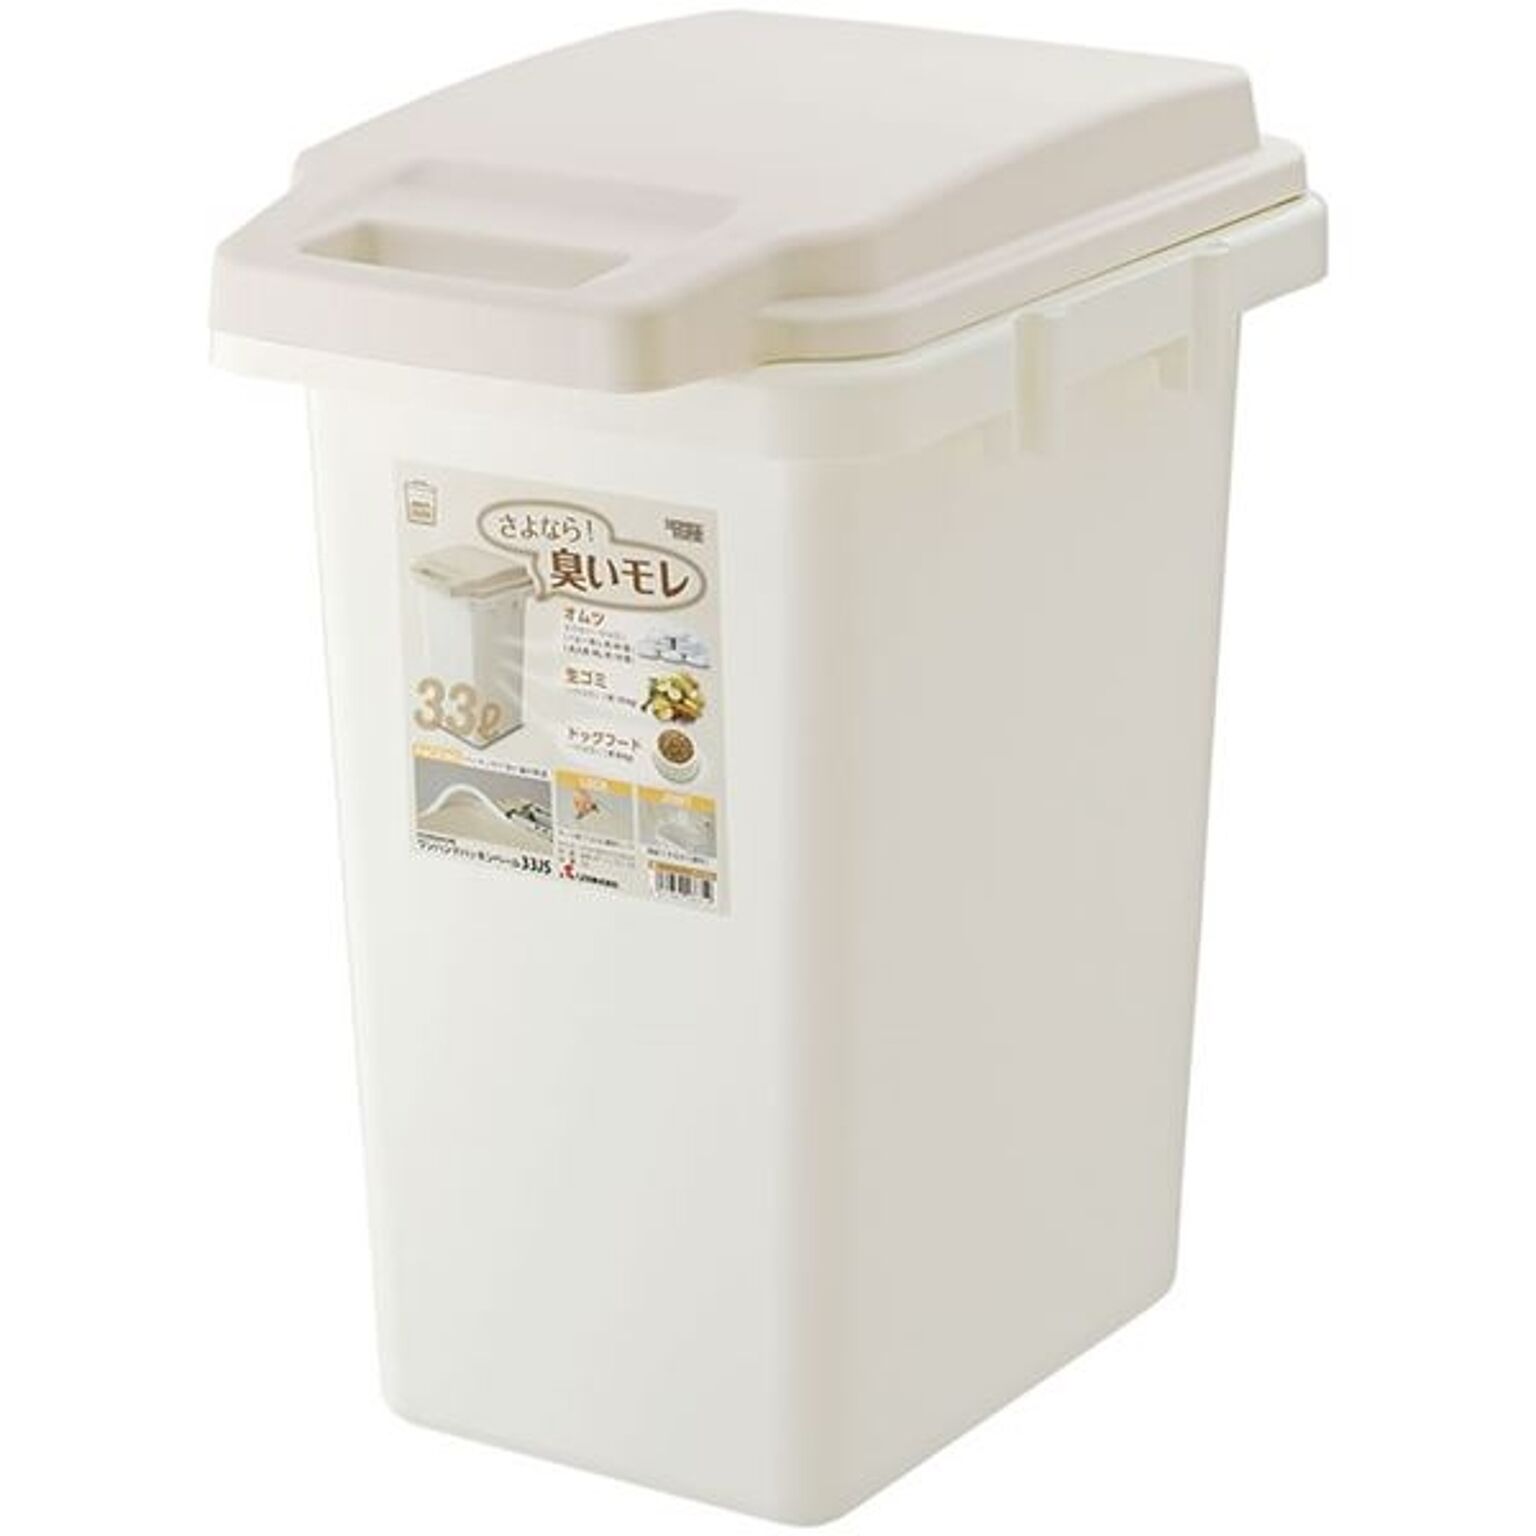 ゴミ箱 ダストボックス 約幅31.9cm 33L ベージュ パッキン ロック コンパクト 日本製 ワンハンドパッキンペール キッチン 台所